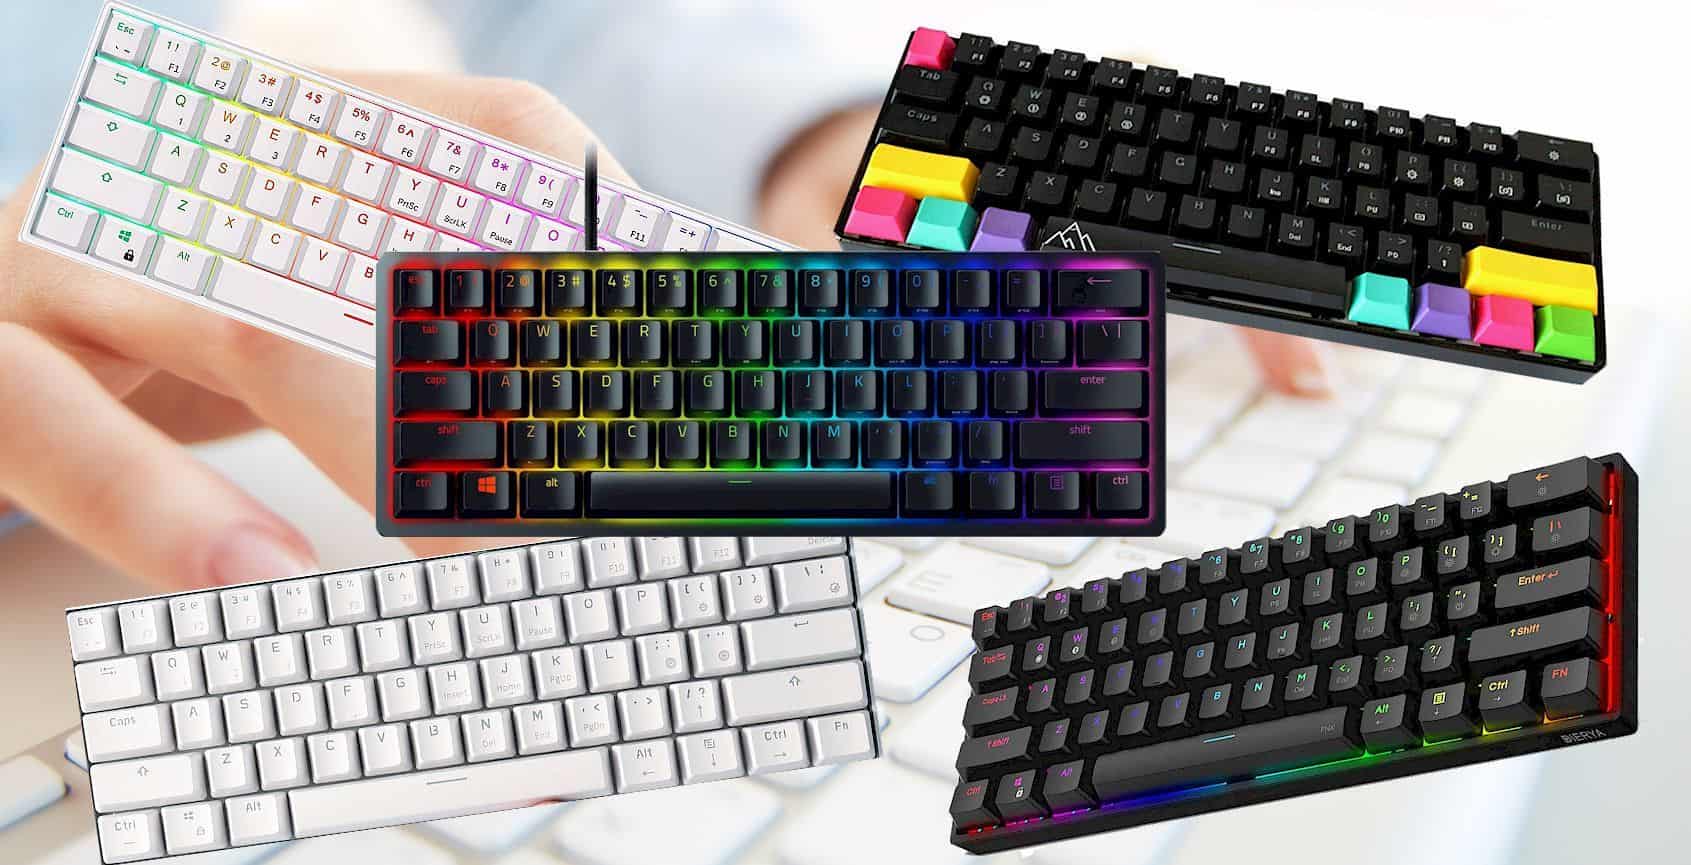 Best 60% Keyboards